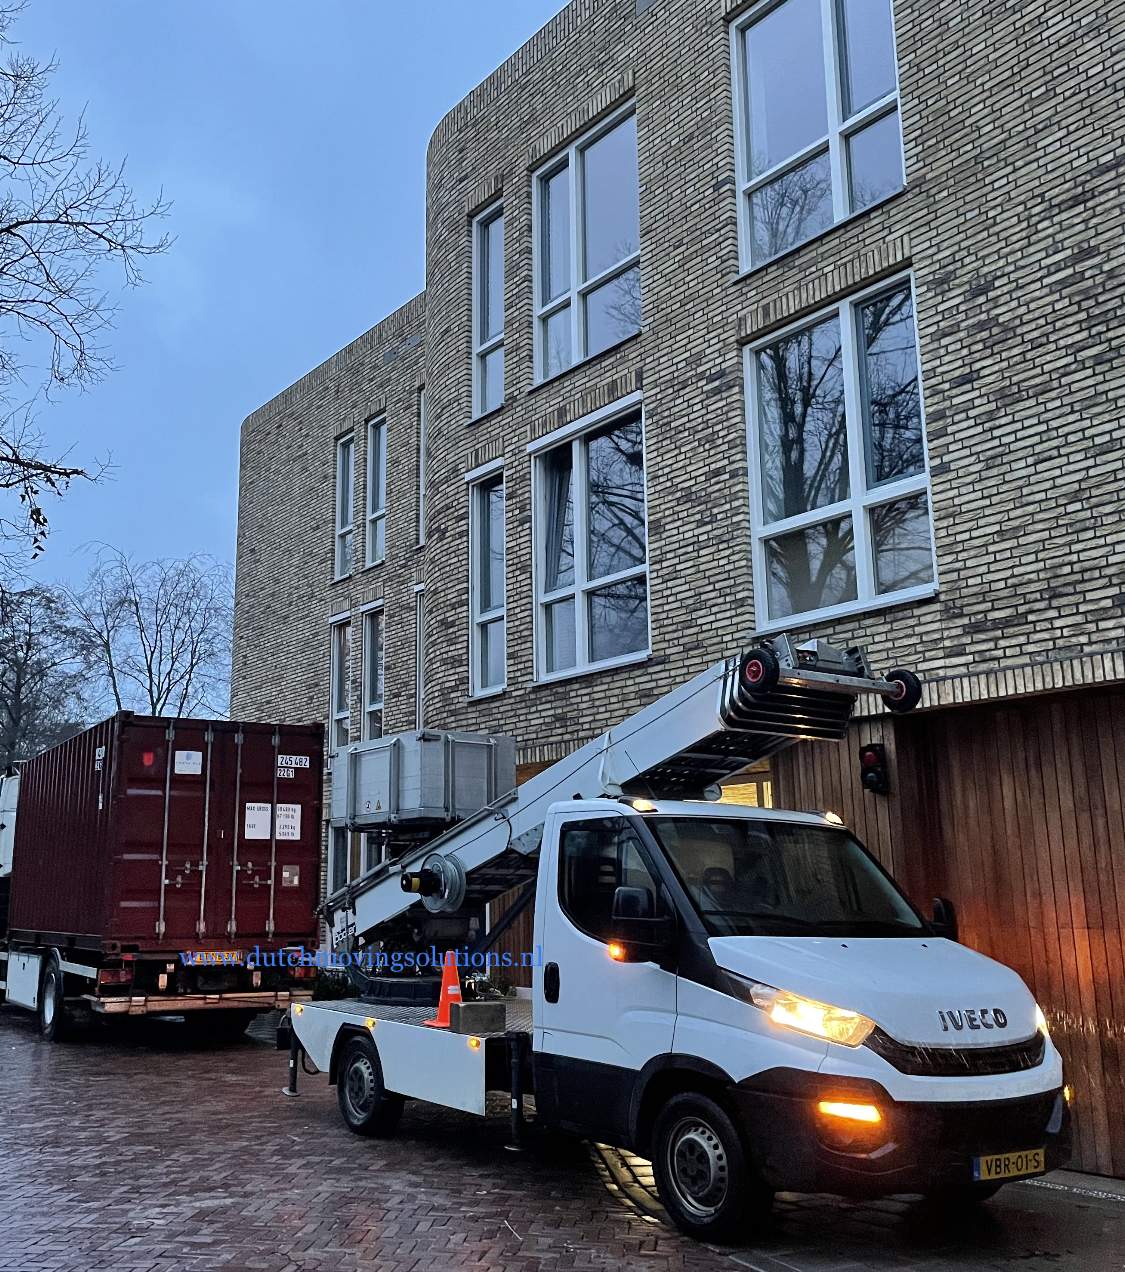 Moving Company Den Haag